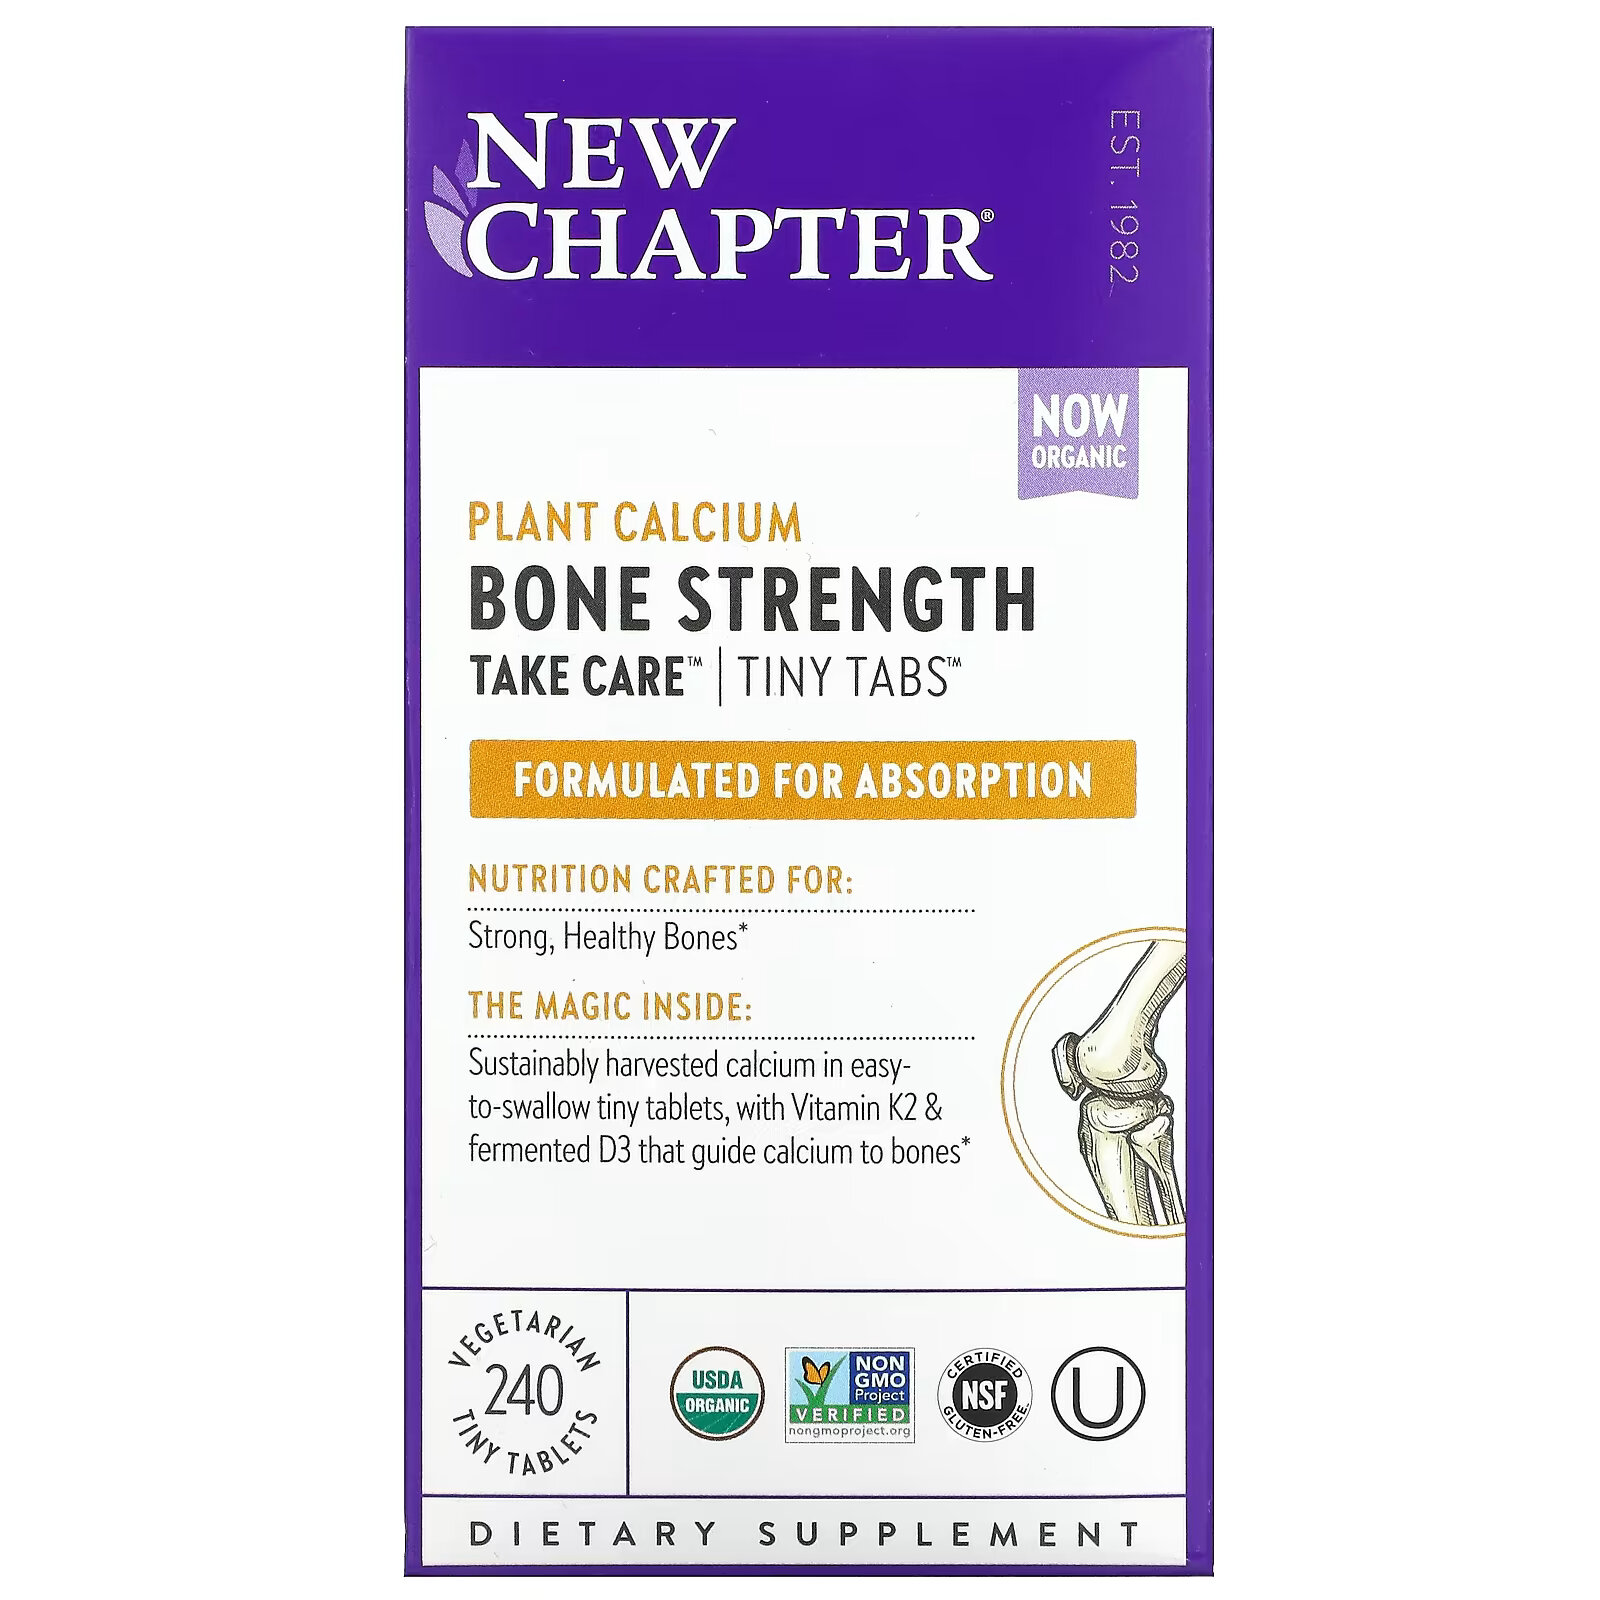 new chapter bone strength take care добавка для укрепления костей 180 маленьких растительных таблеток New Chapter, Bone Strength Take Care, добавка для укрепления костей с растительным кальцием, 240 вегетарианских мини-таблеток